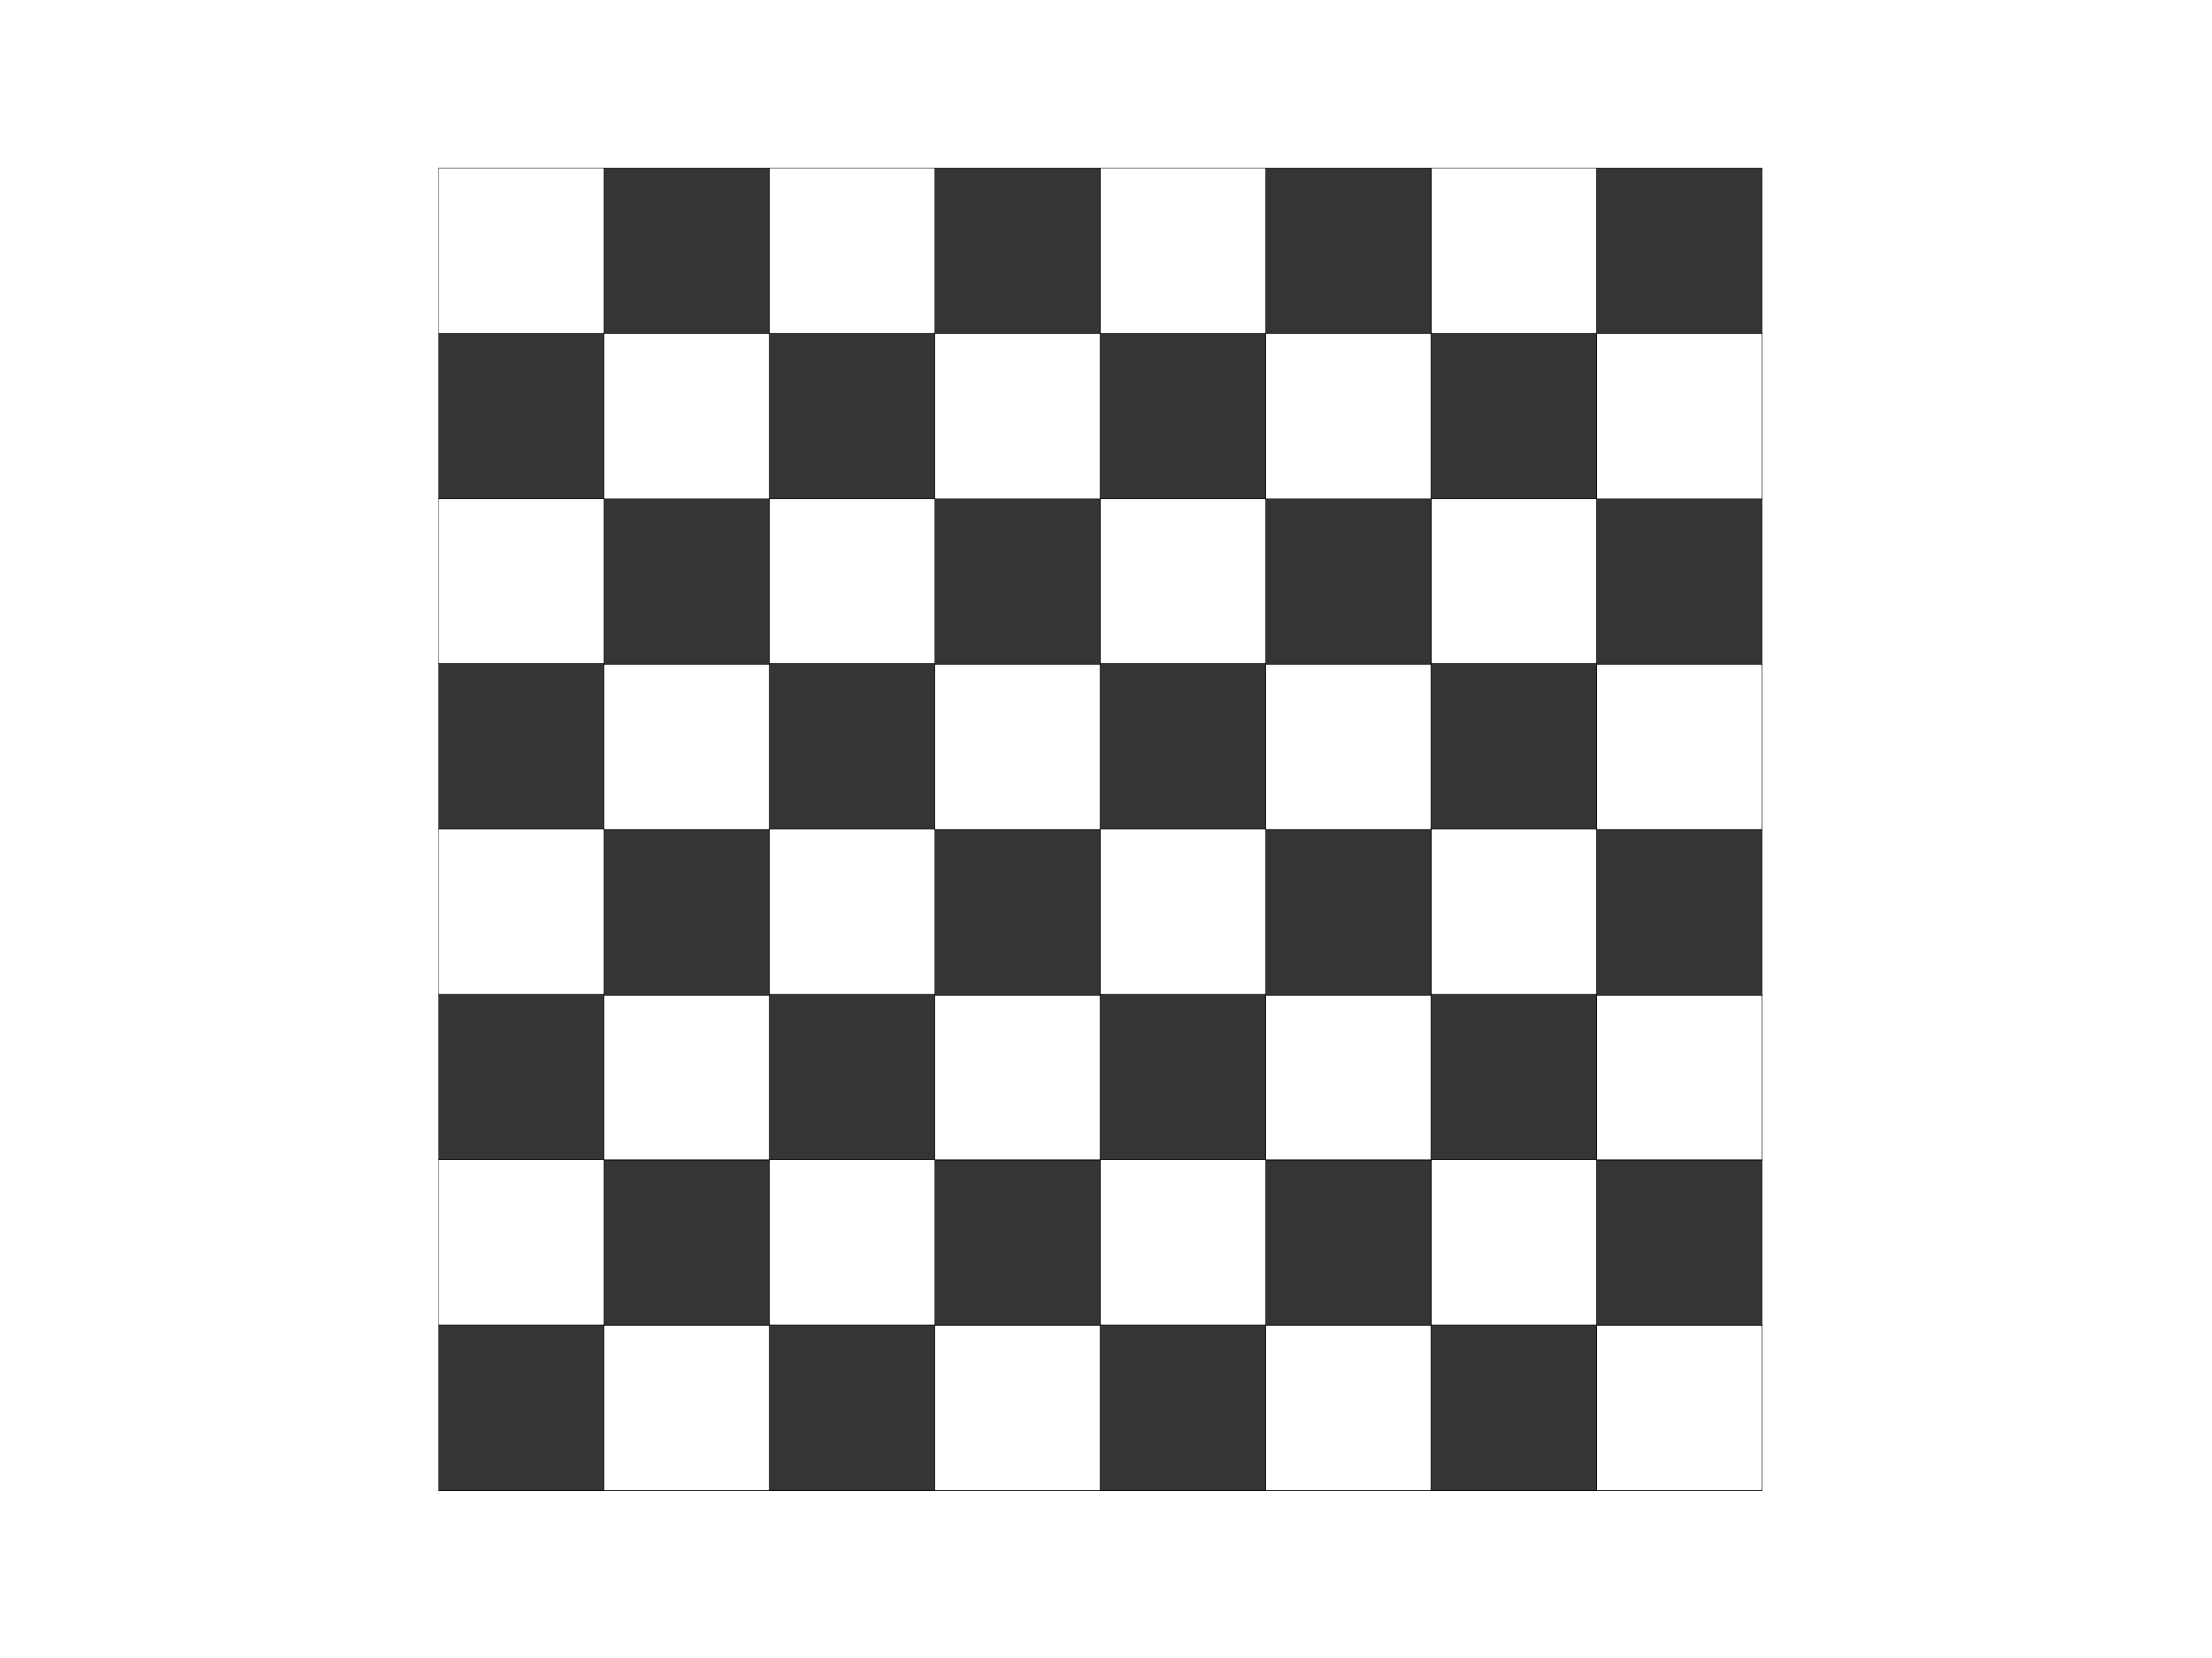 На шахматной доске 64 клетки. Шахматная доска. Шахматное поле для печати. Шашечная доска для печати. Макет шахматной доски для печати.